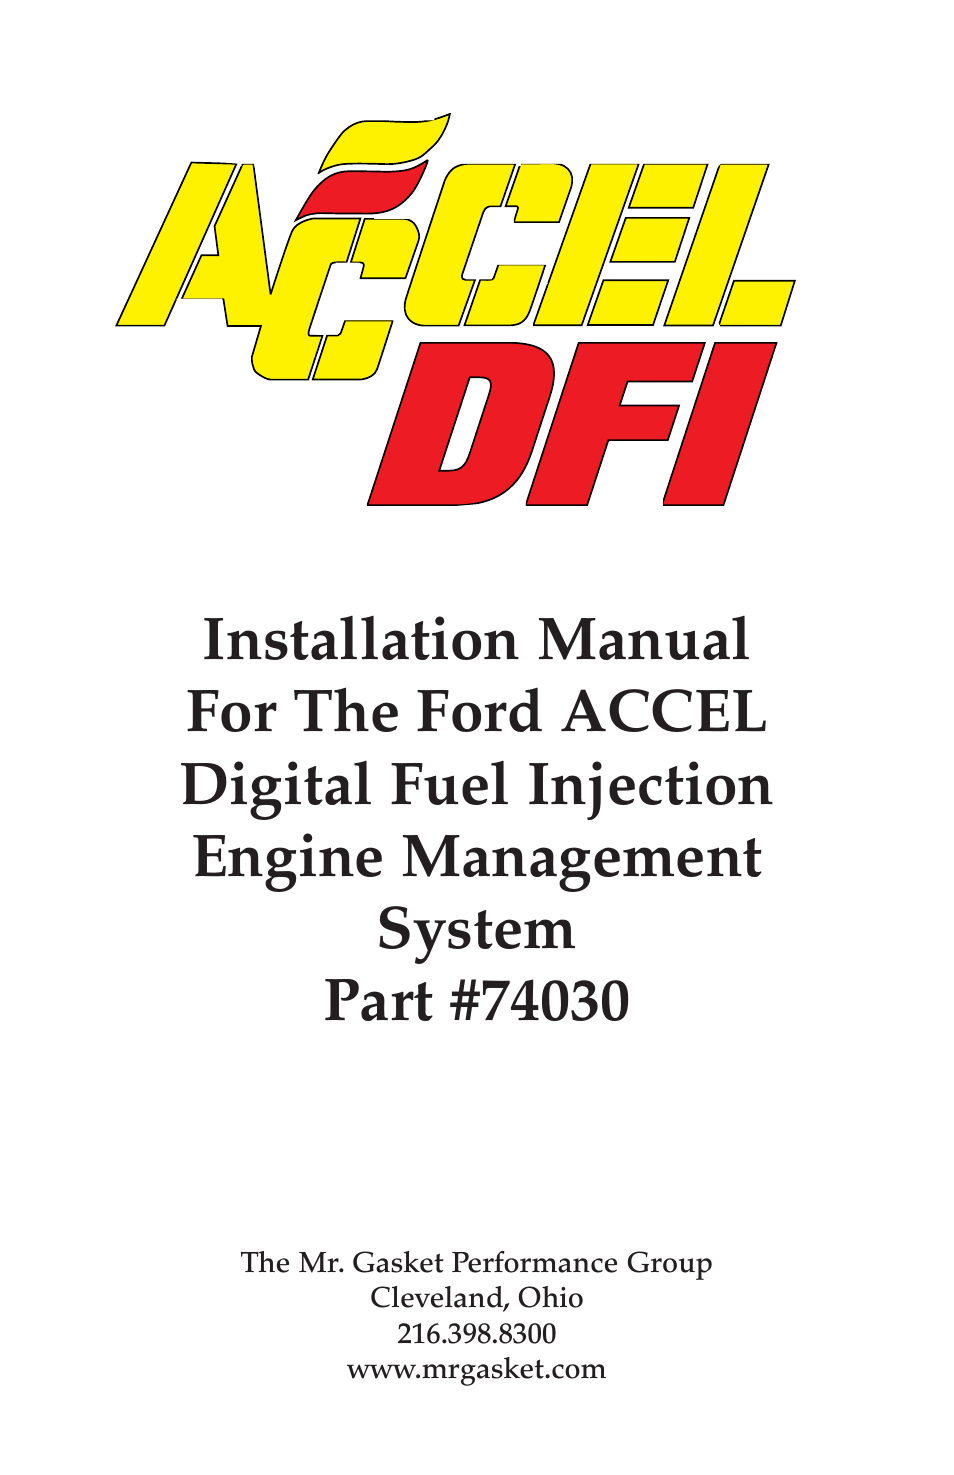 ACCEL Digital Fuel Injection Engine Management System 74030